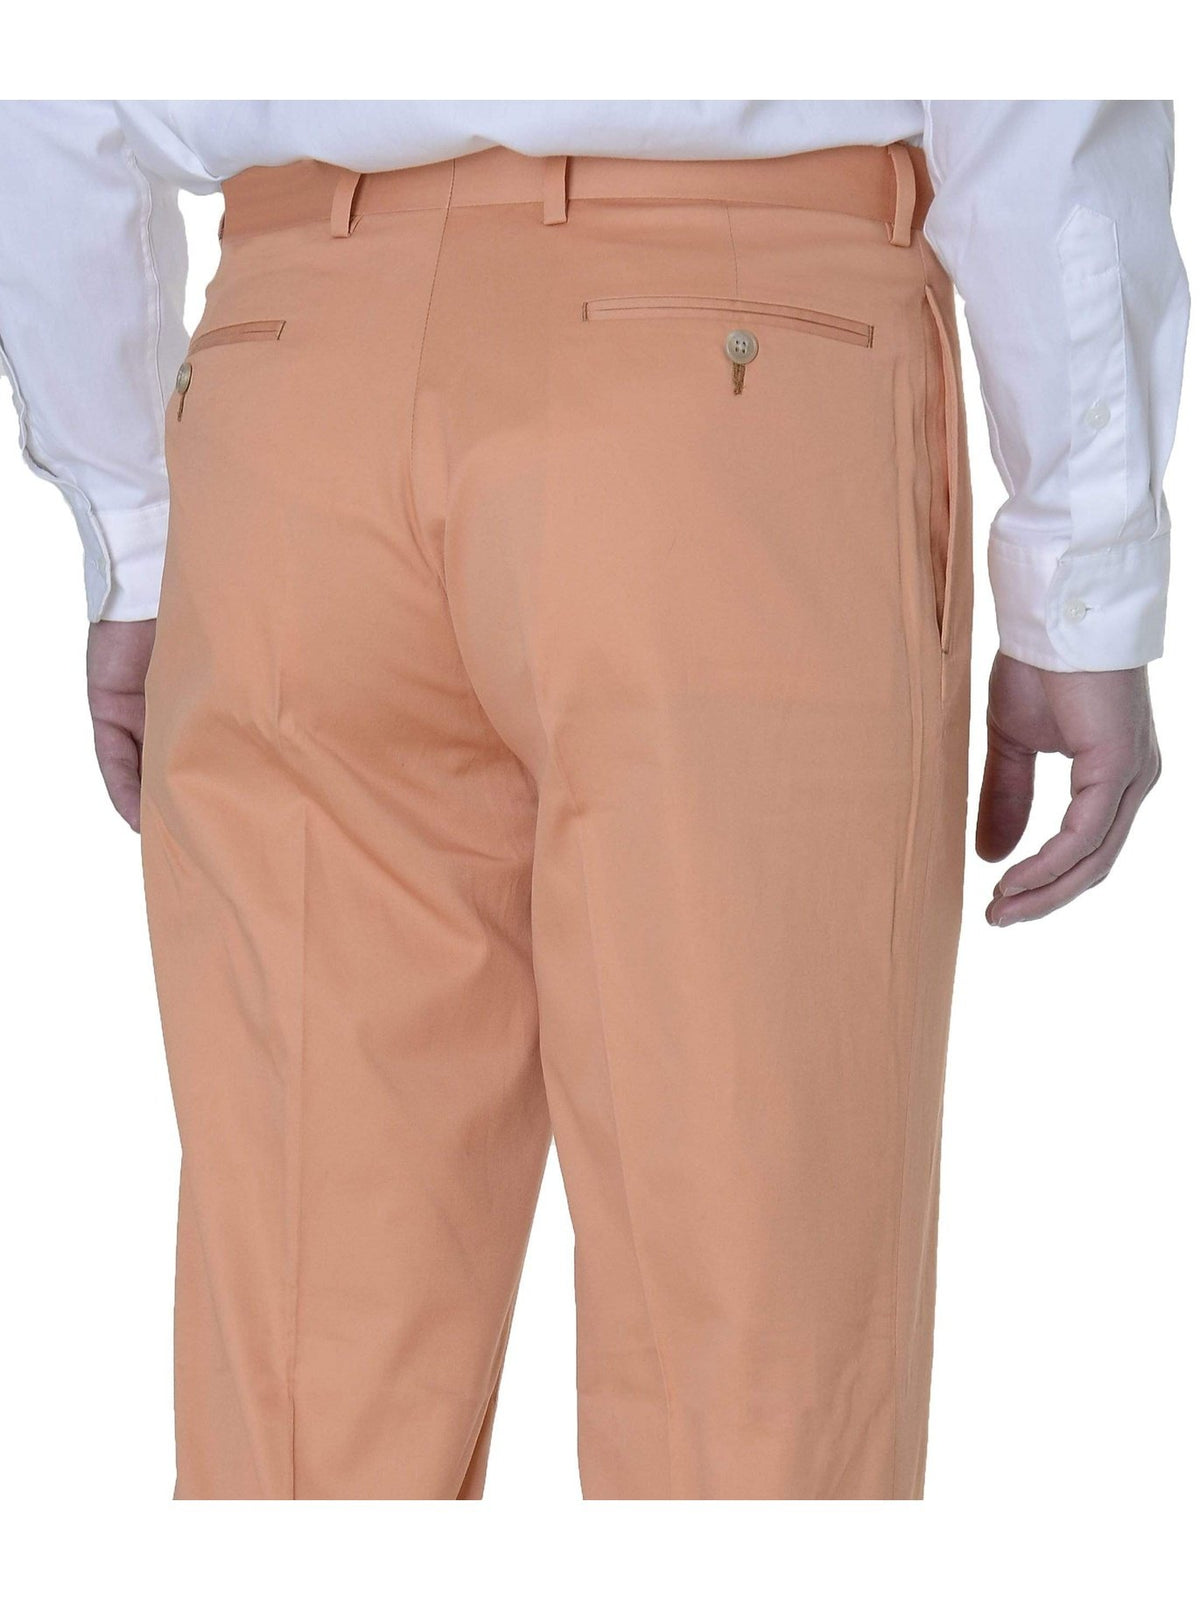 Ralph Lauren Silver Label Trim Fit Cantaloupe Orange Flat Front Cotton Pants - The Suit Depot